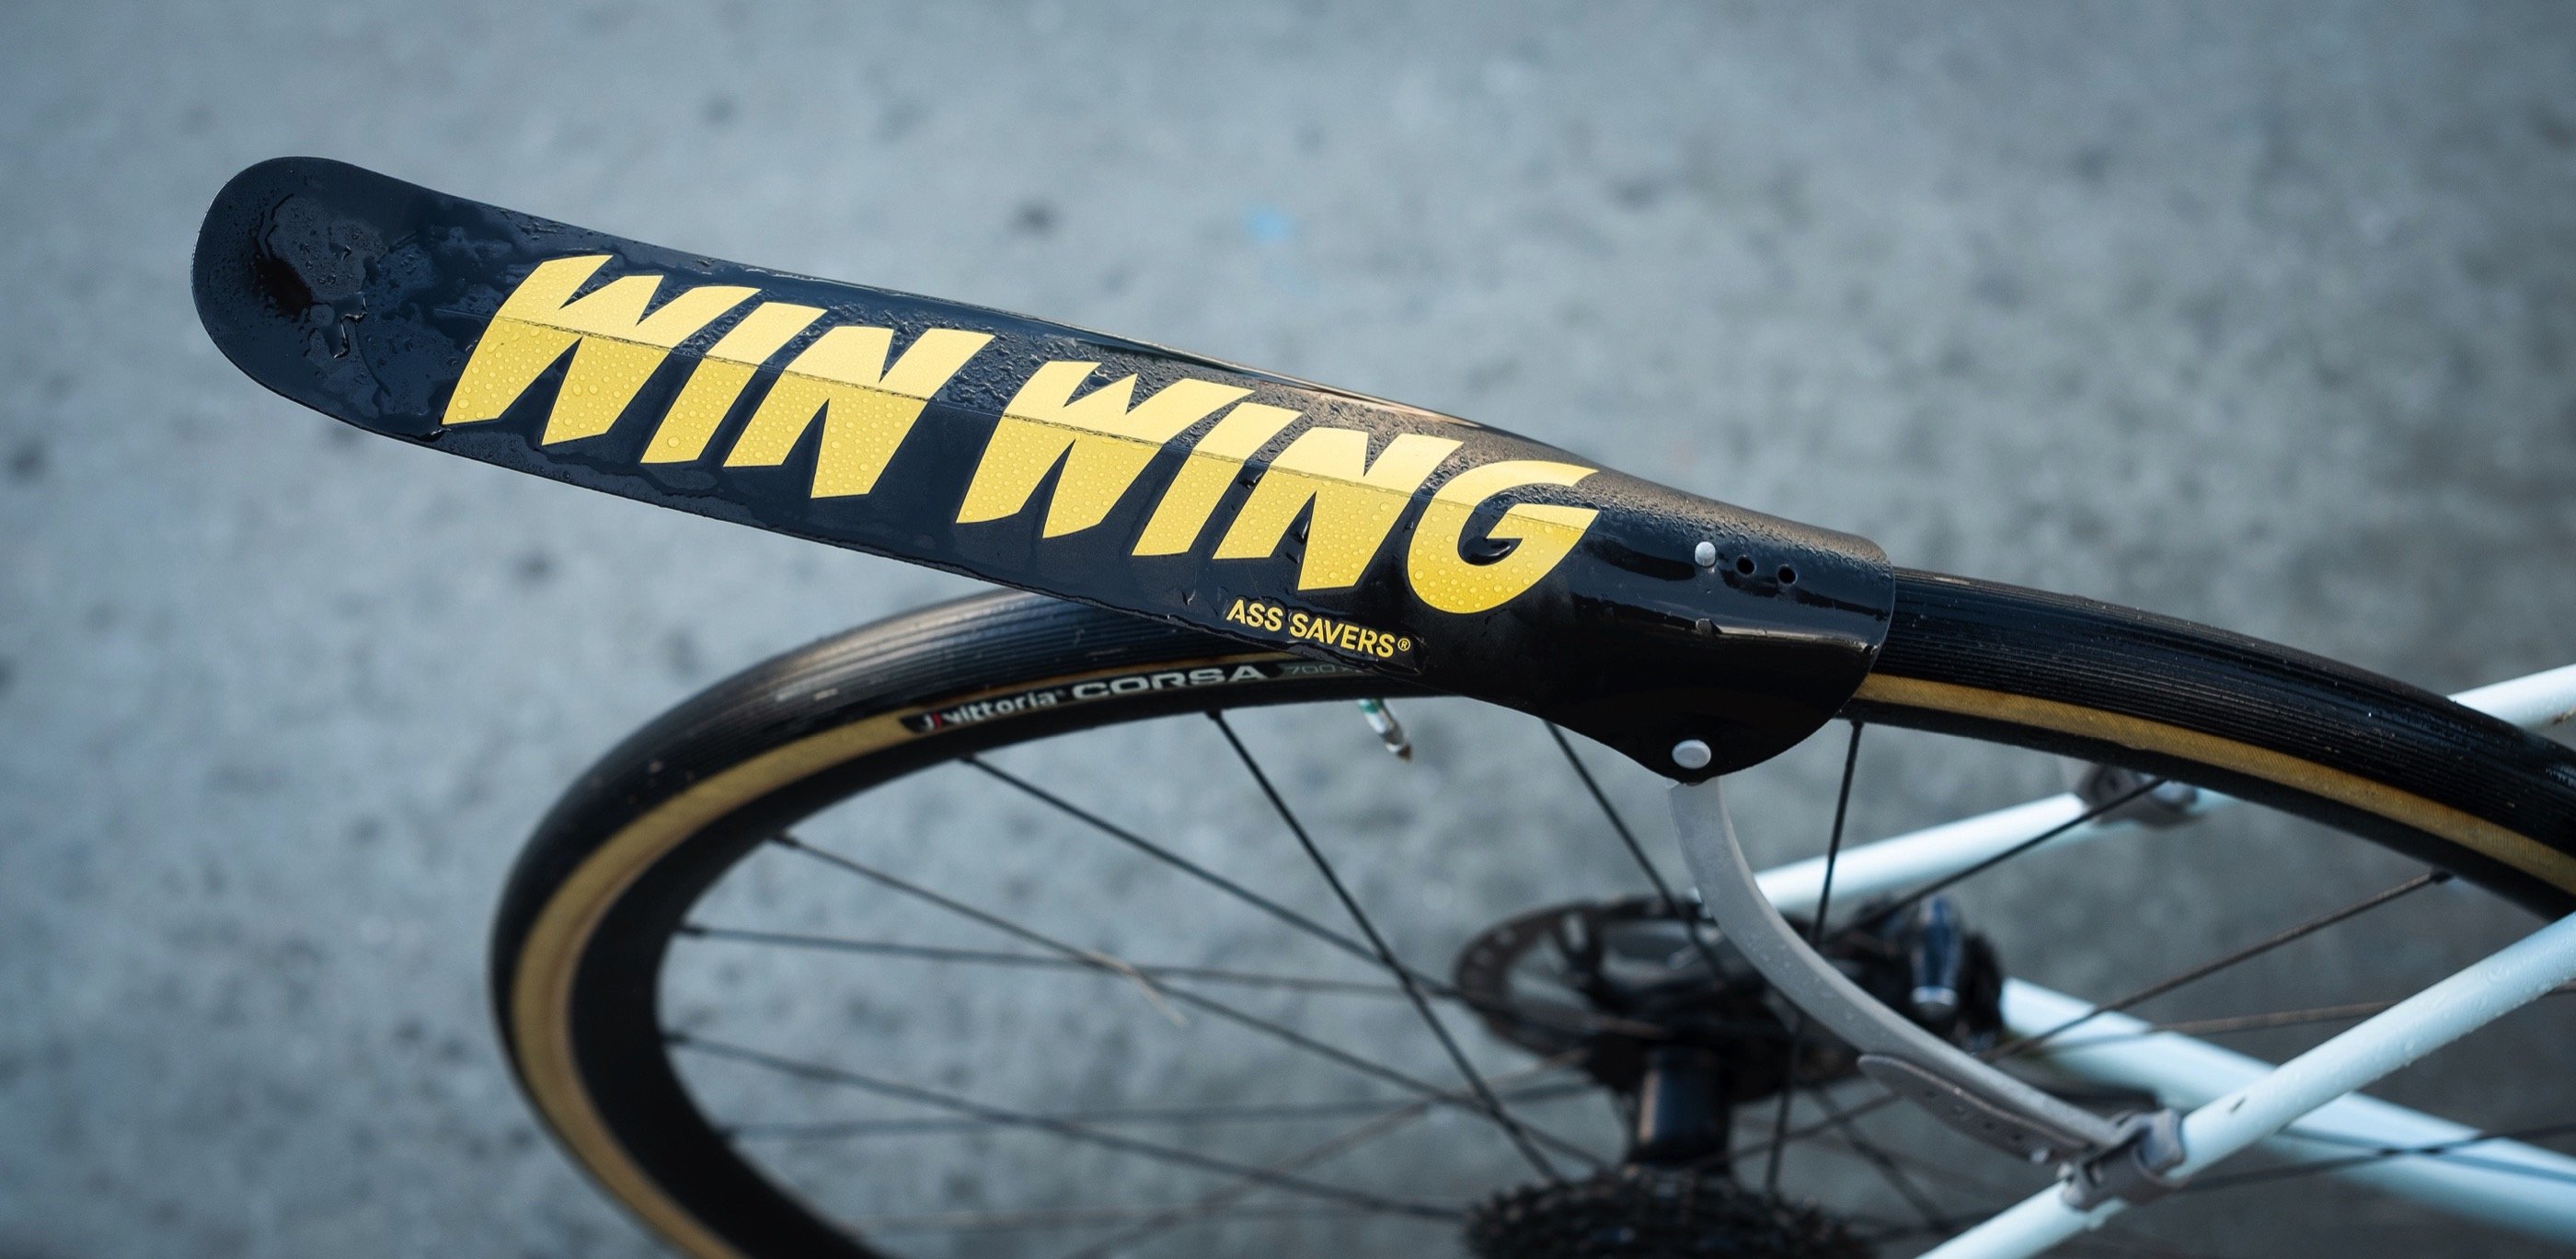 Neues Ass Savers Wing Wing Rad-Schutzblech - Rennrad-News